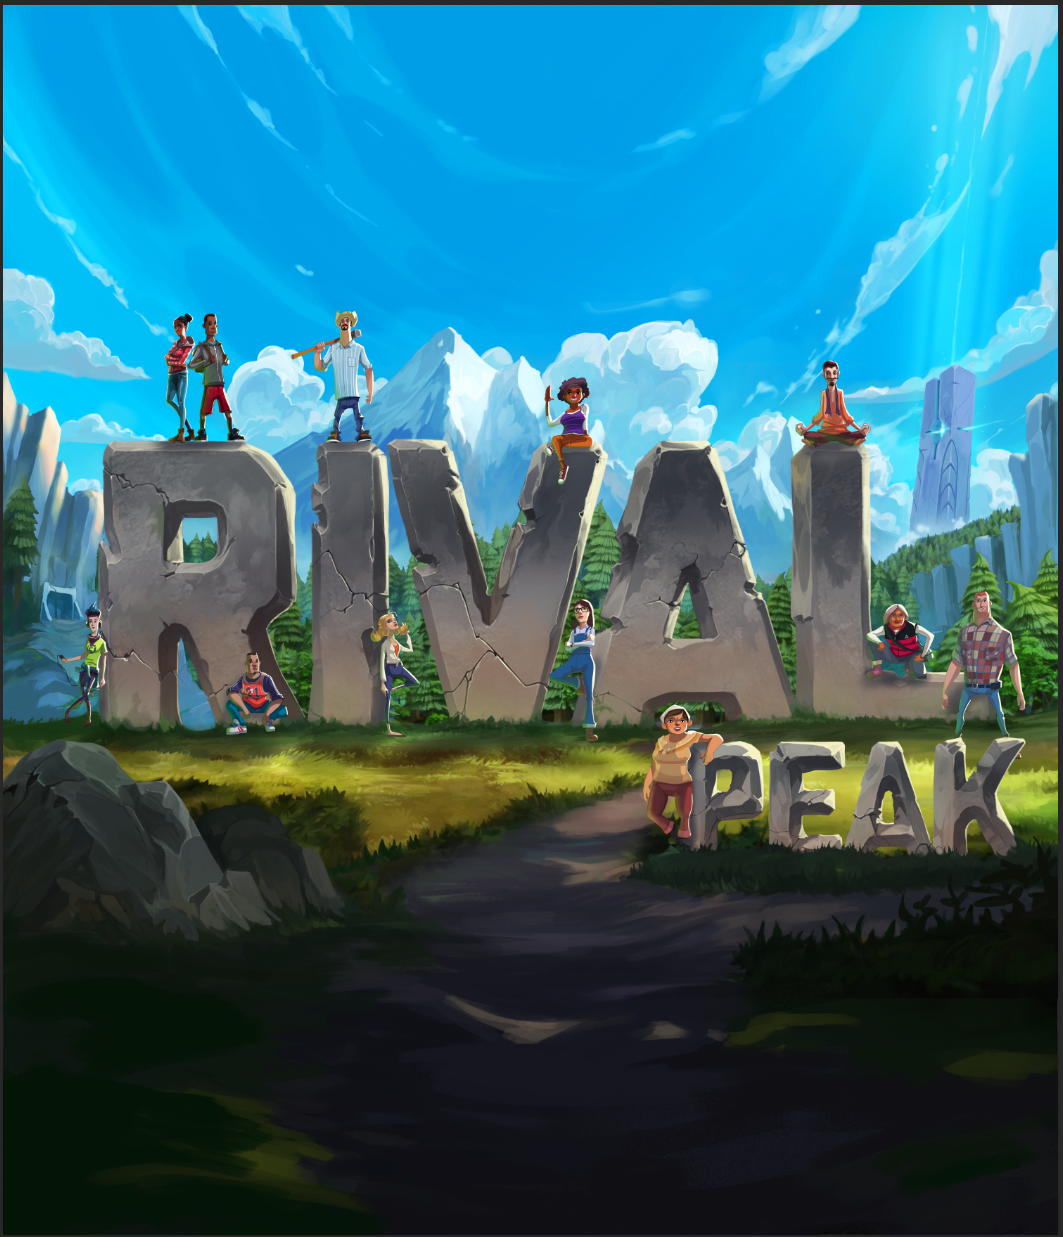 原生云游戏+大型互动真人秀《Rival Peak》将首次亮相ChinaJoy 全球云游戏产业大会